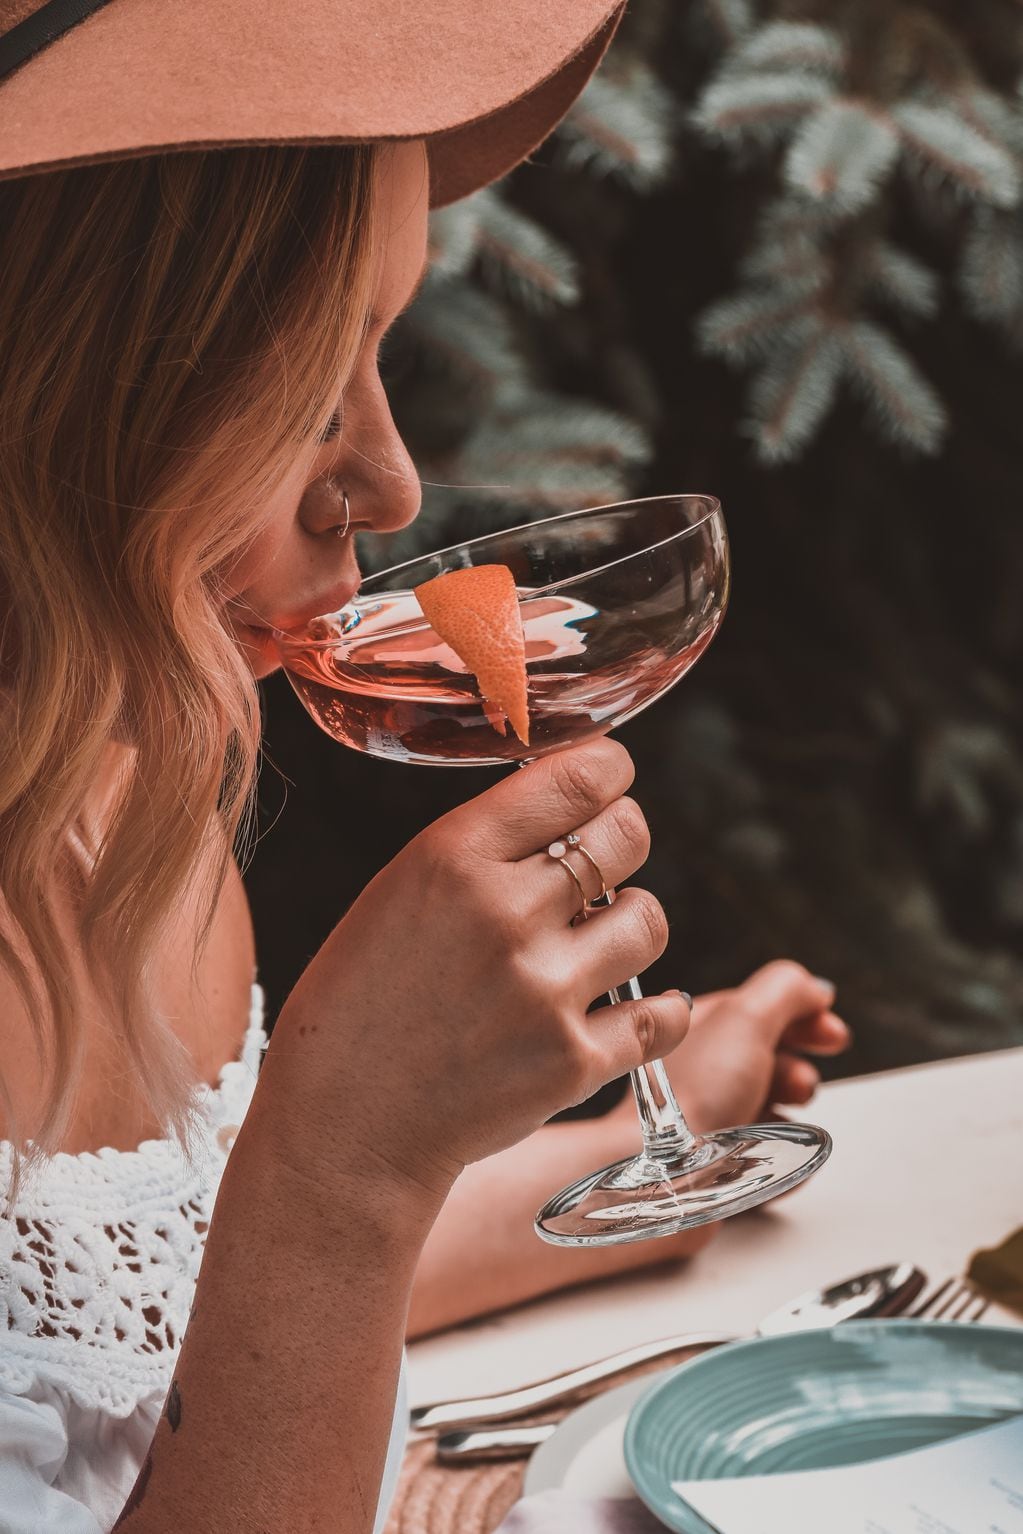 La versatilidad de los vinos rosados los presenta como una gran opción para la coctelería.